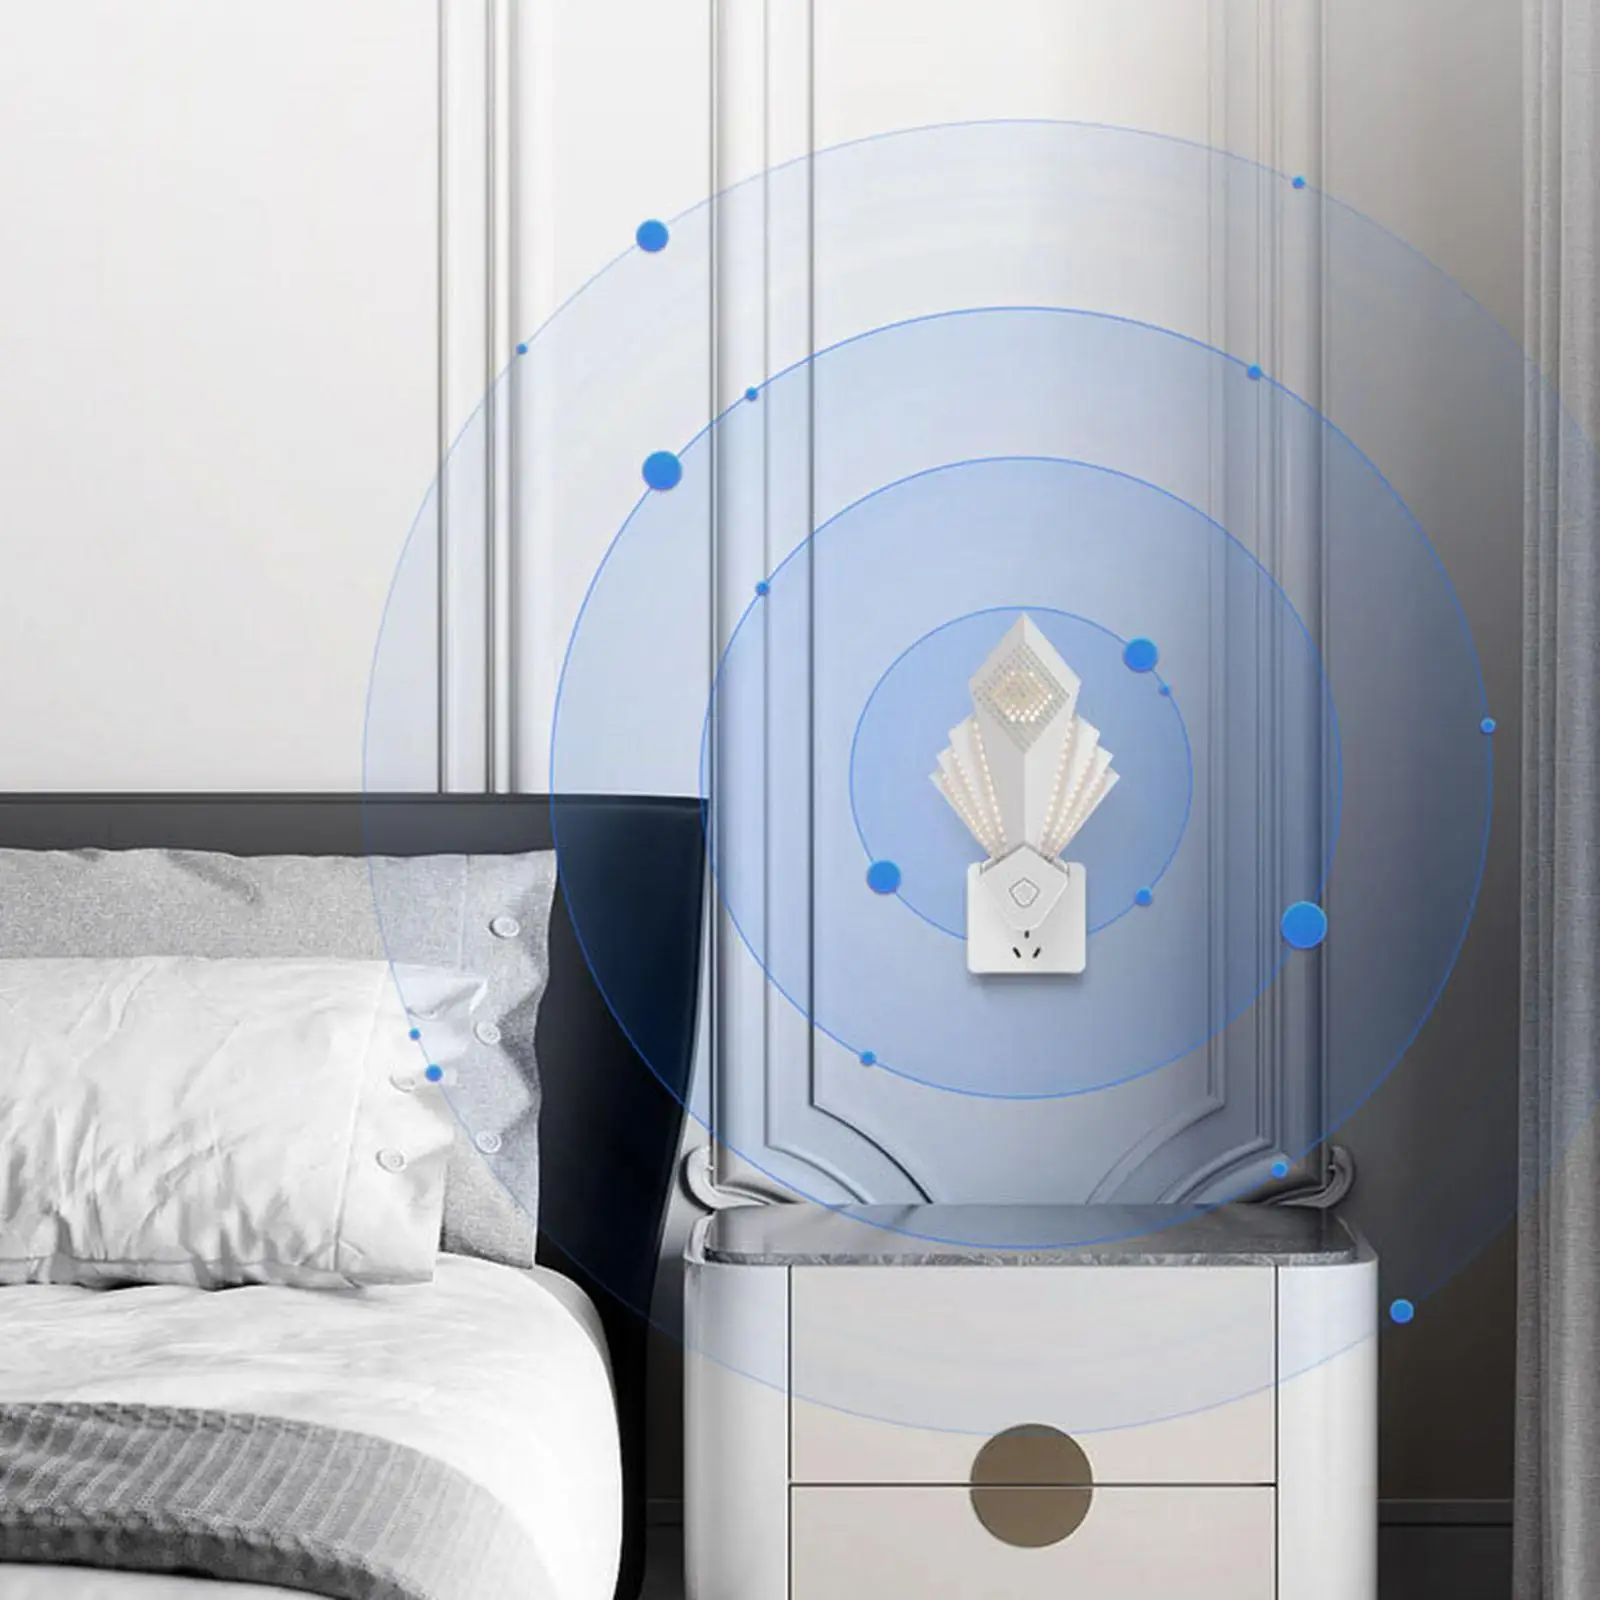 Ultrasonic Pest Repeller White Energy Saving Dust Mite Killer for Home Bedroom Shops